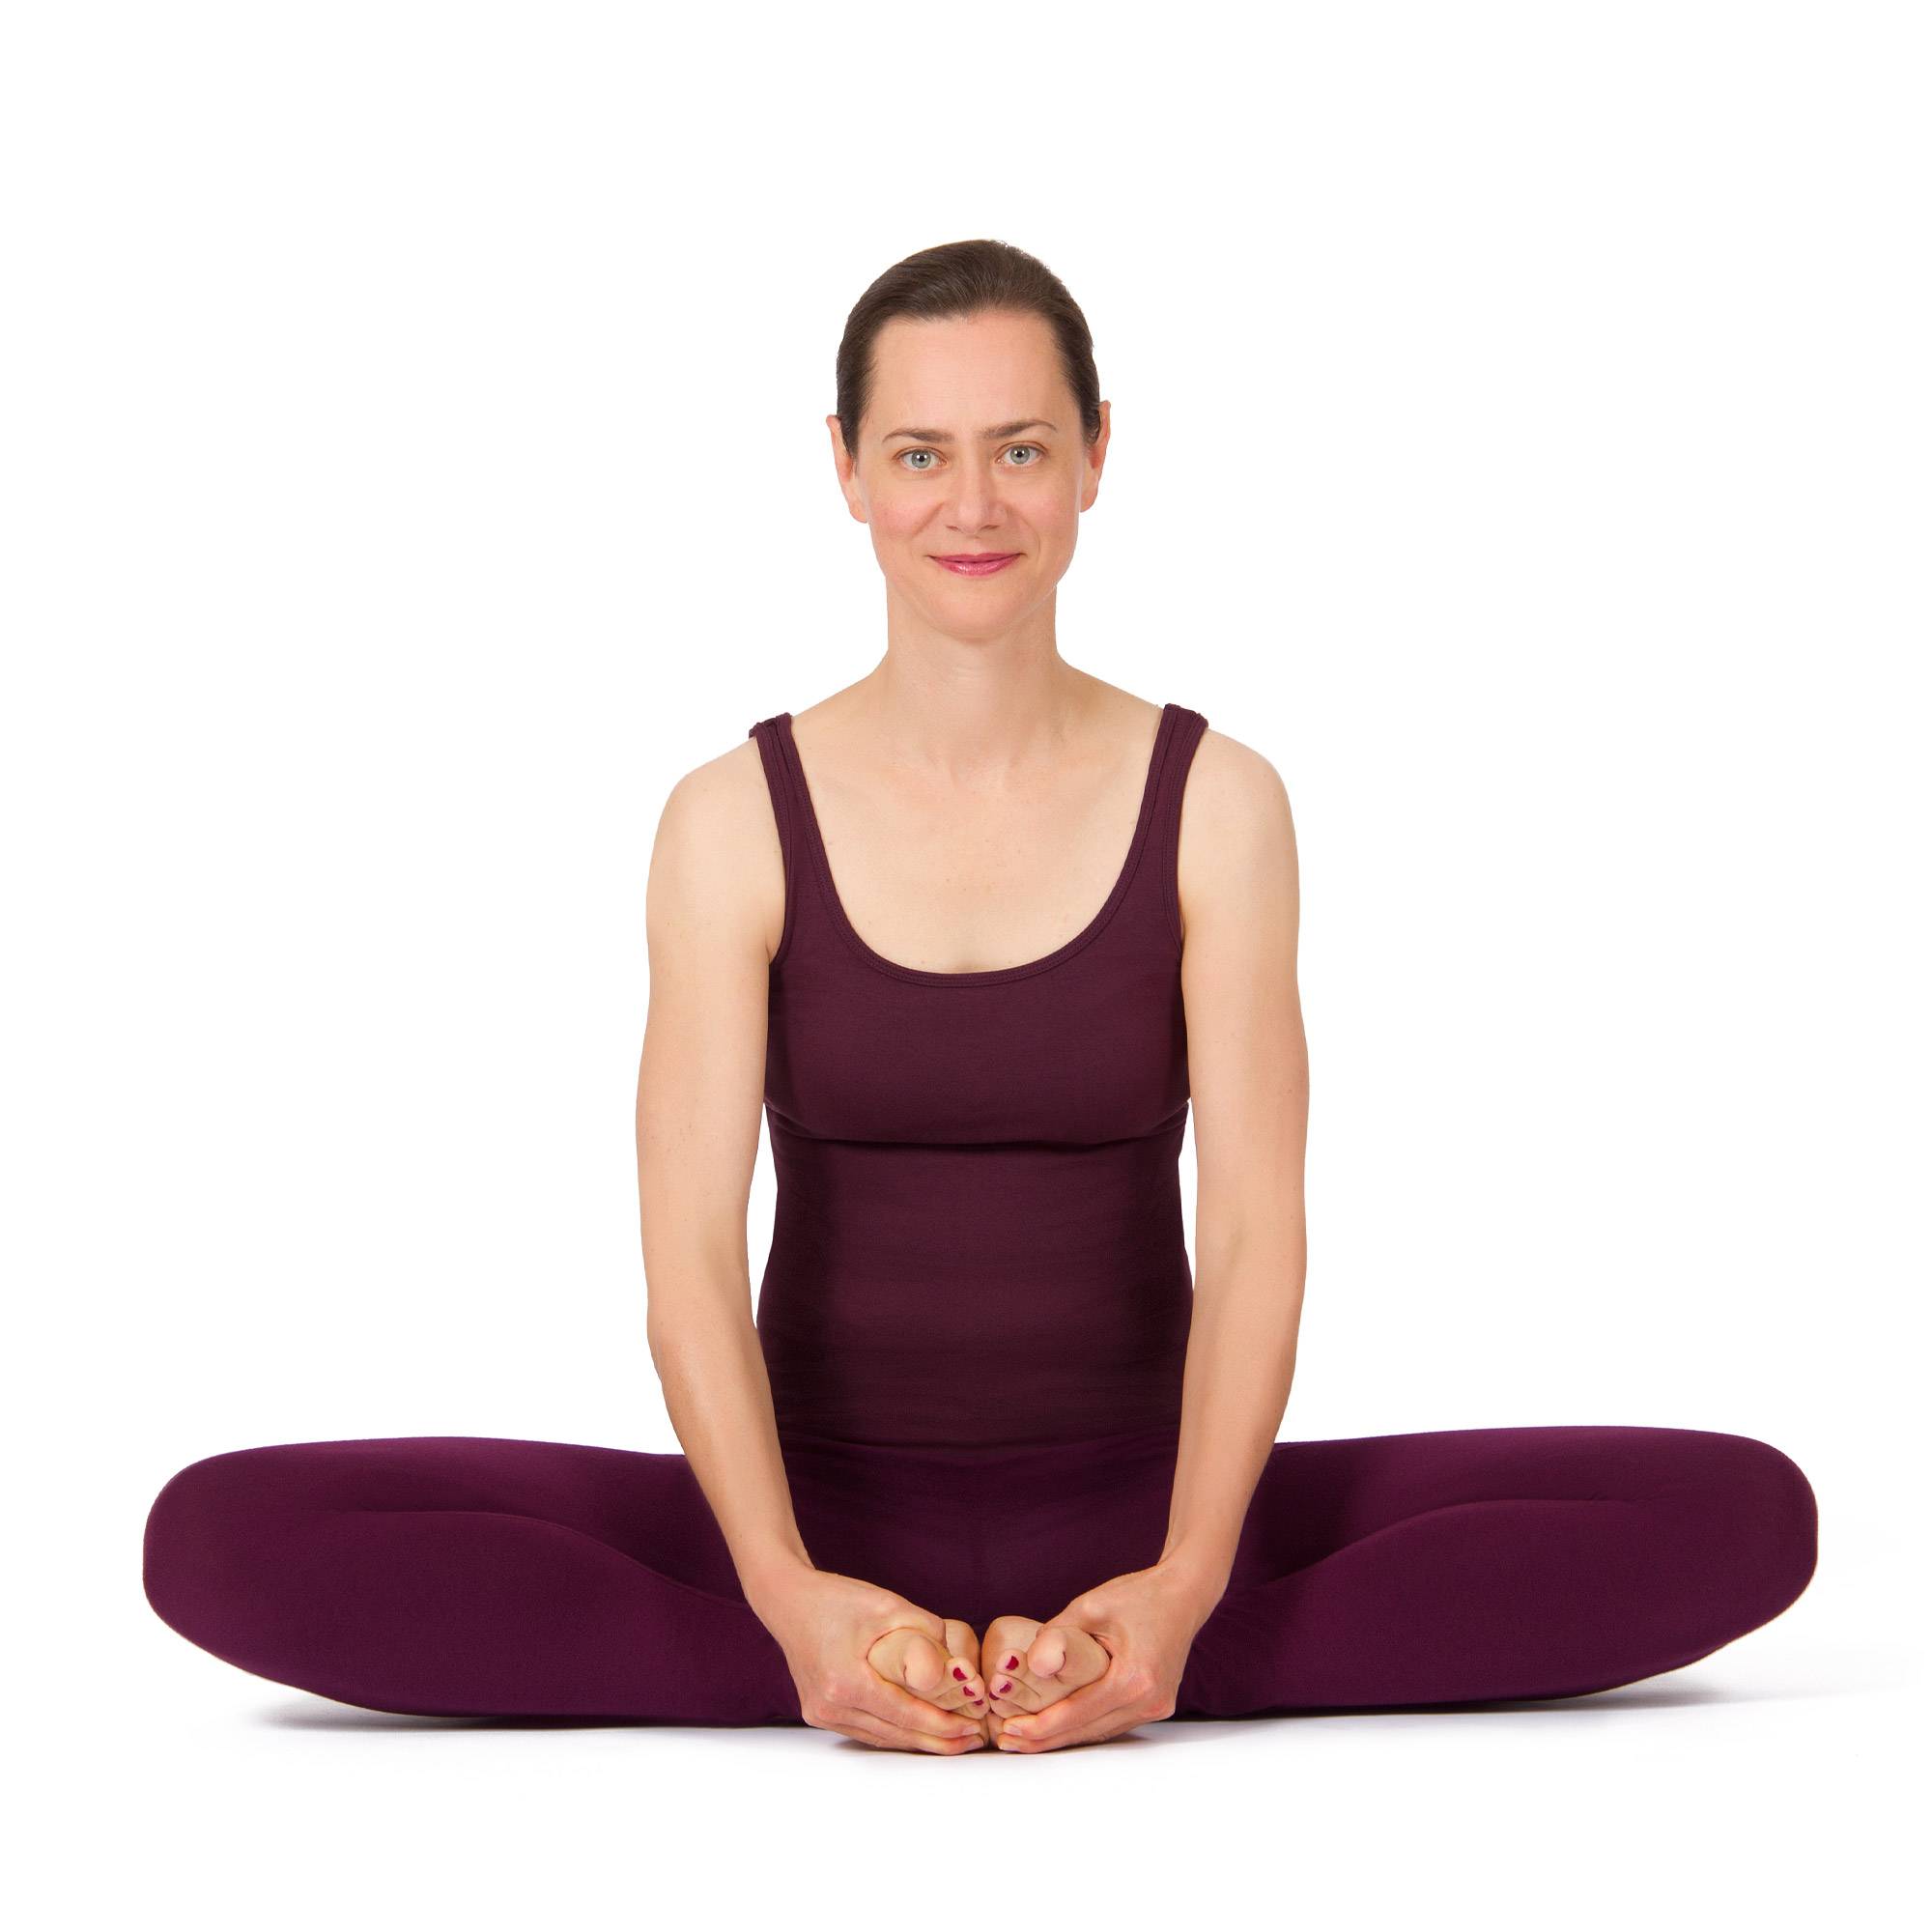 Ардха-чакрасана, или урдхва-дханурасана, — полуколесо, или верхняя поза лука. йога-терапия. новый взгляд на традиционную йога-терапию